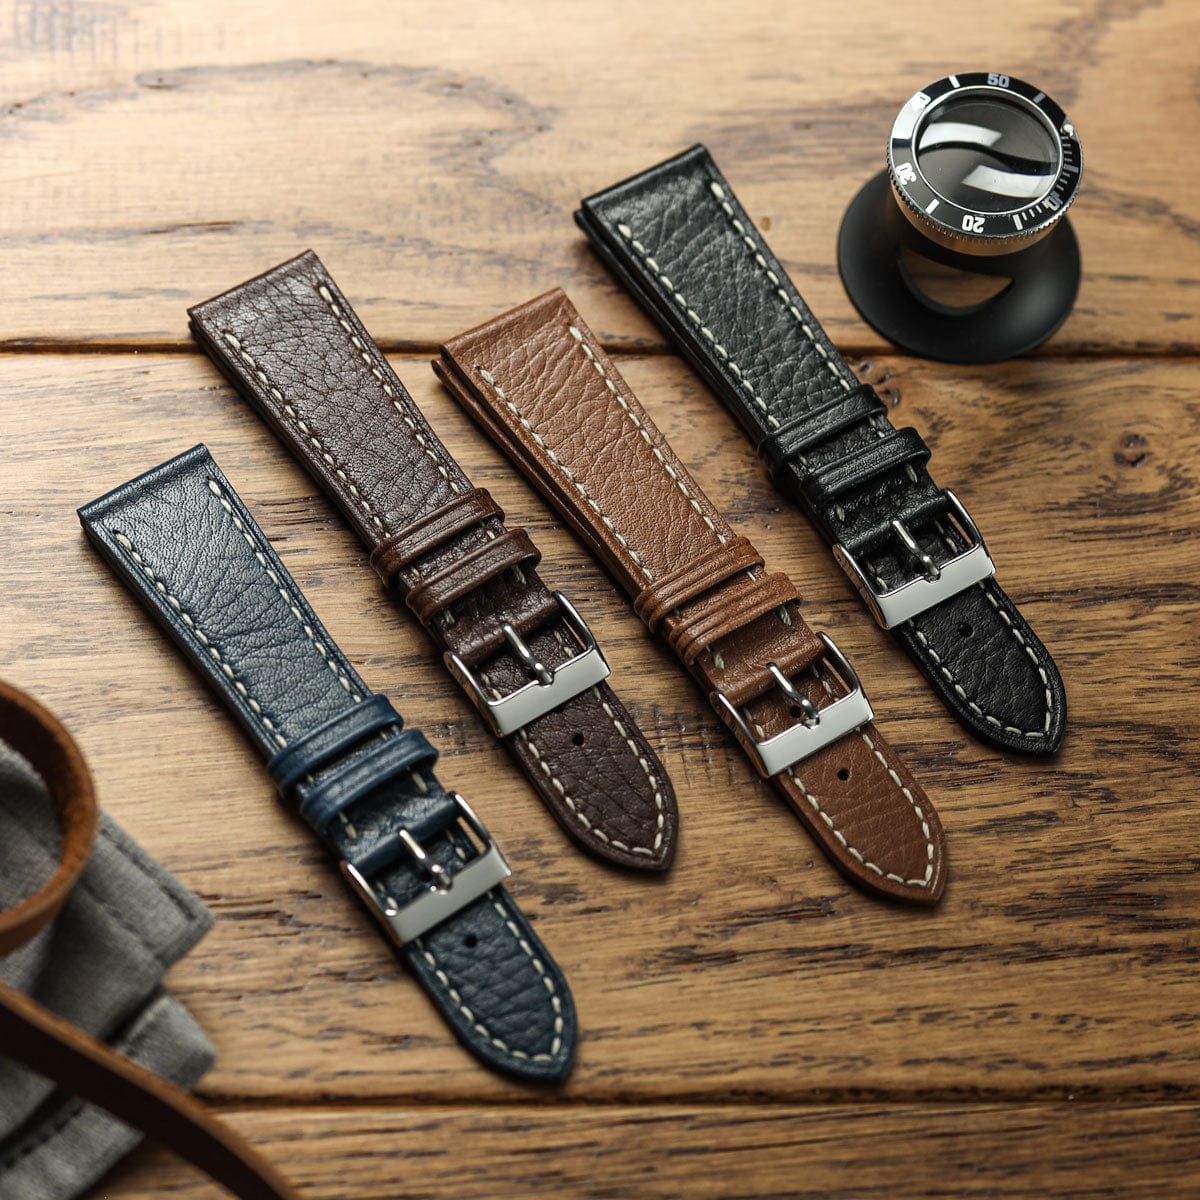 Castile Handmade Spanish Leather Watch Strap - Dark Brown